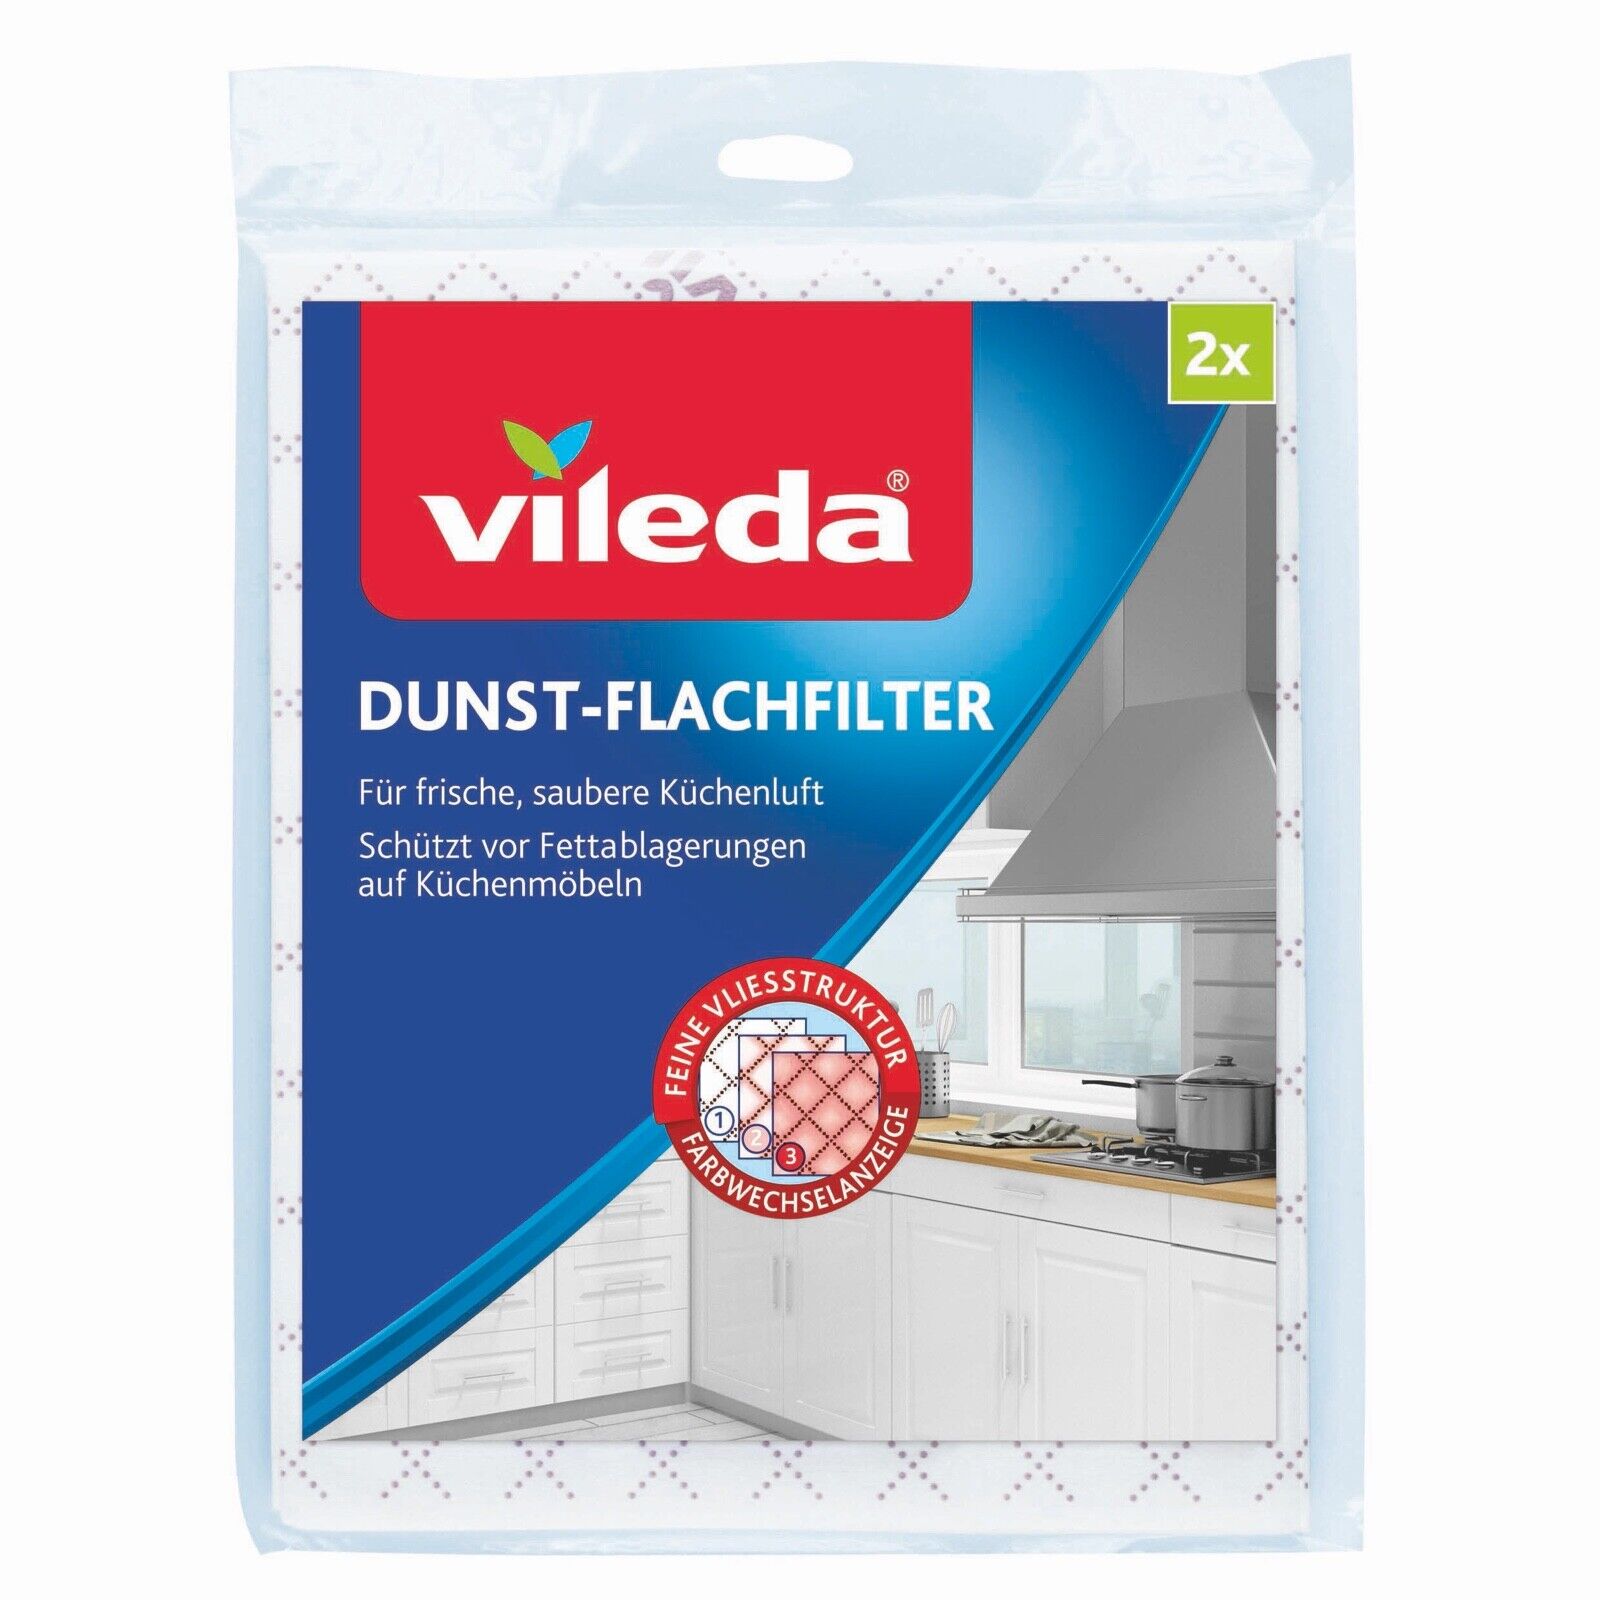 Vileda® Dunst-Flachfilter Universalformat, 2er Pack